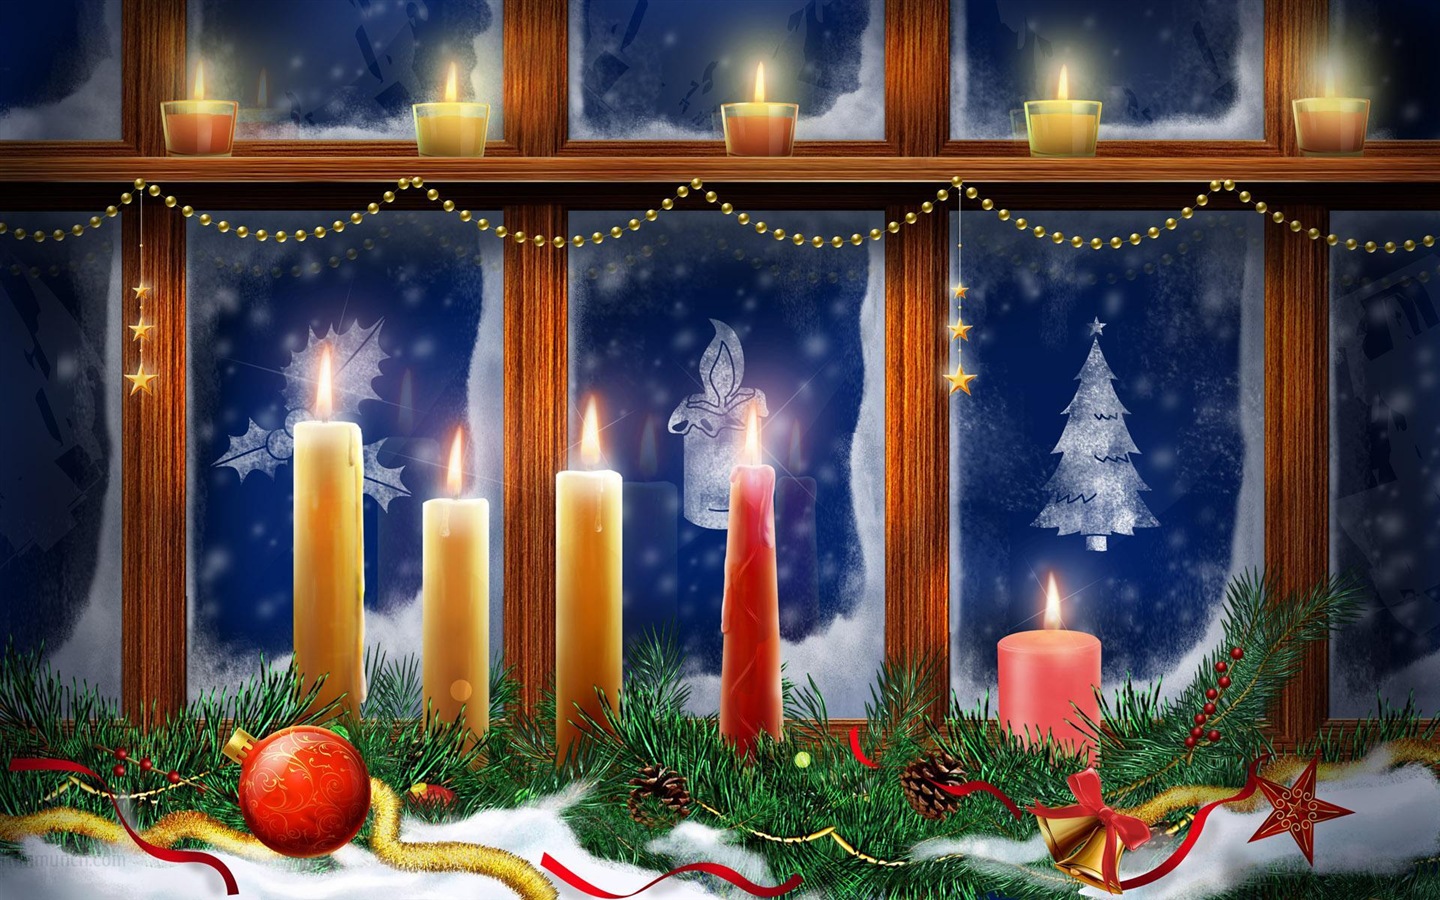 Merry Christmas HD Wallpaper destacados #14 - 1440x900